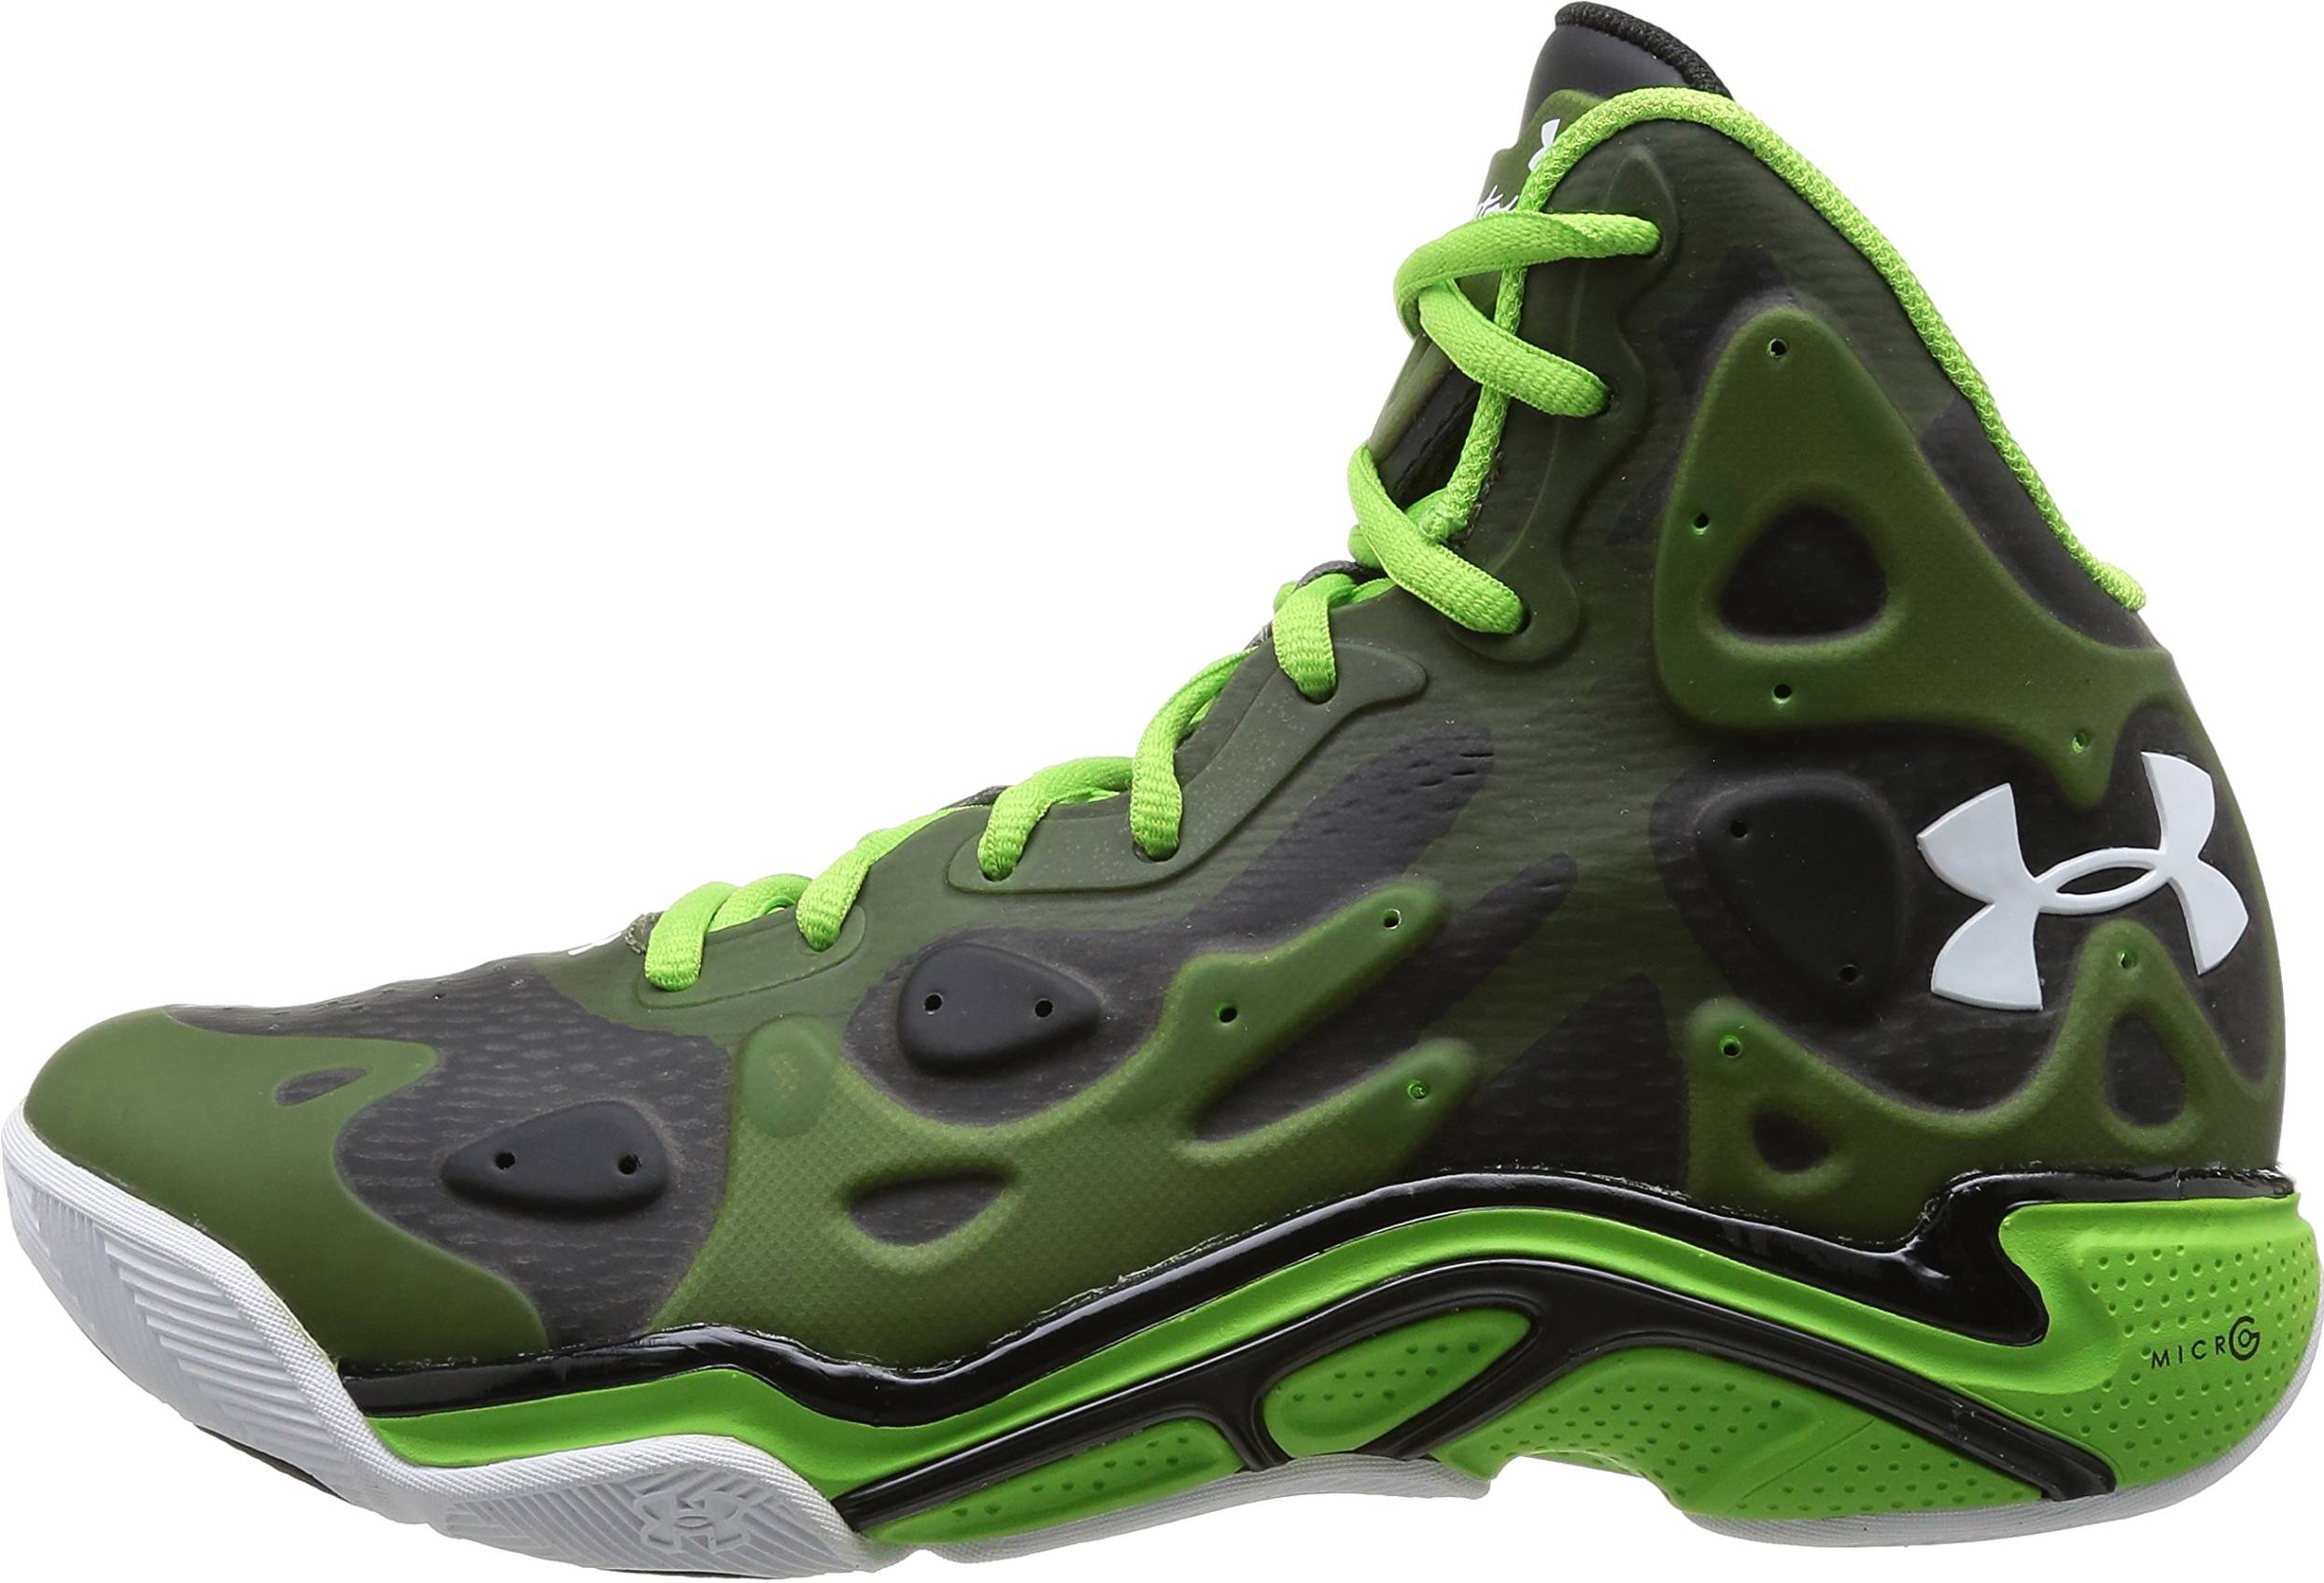 Details about   Under Armour Men's Spawn 2 Basketball Shoe Choose SZ/color 